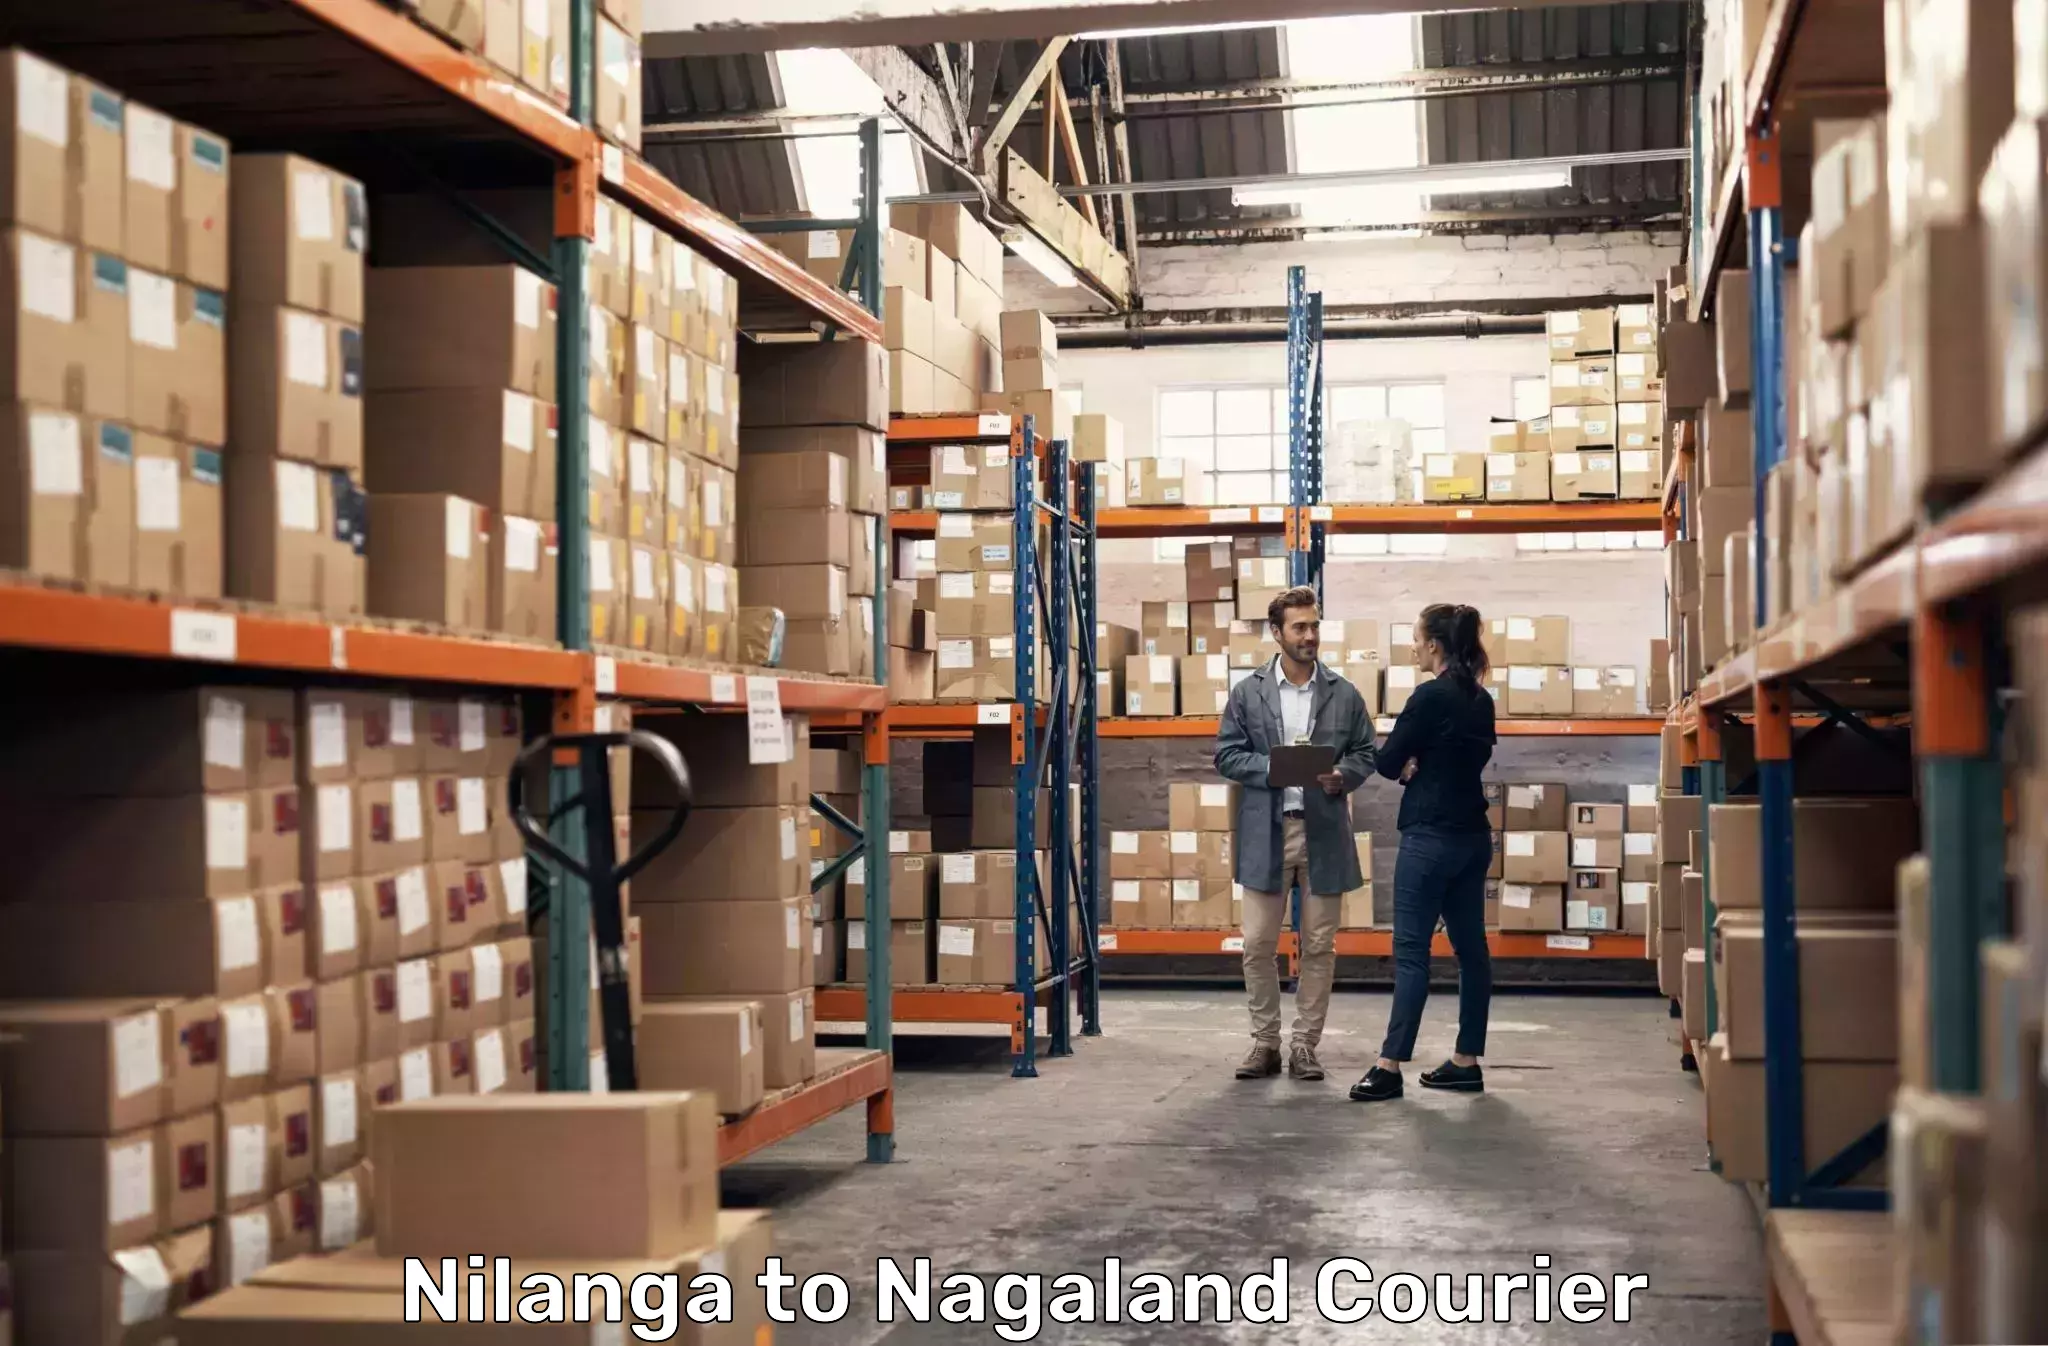 24/7 courier service in Nilanga to Mokokchung